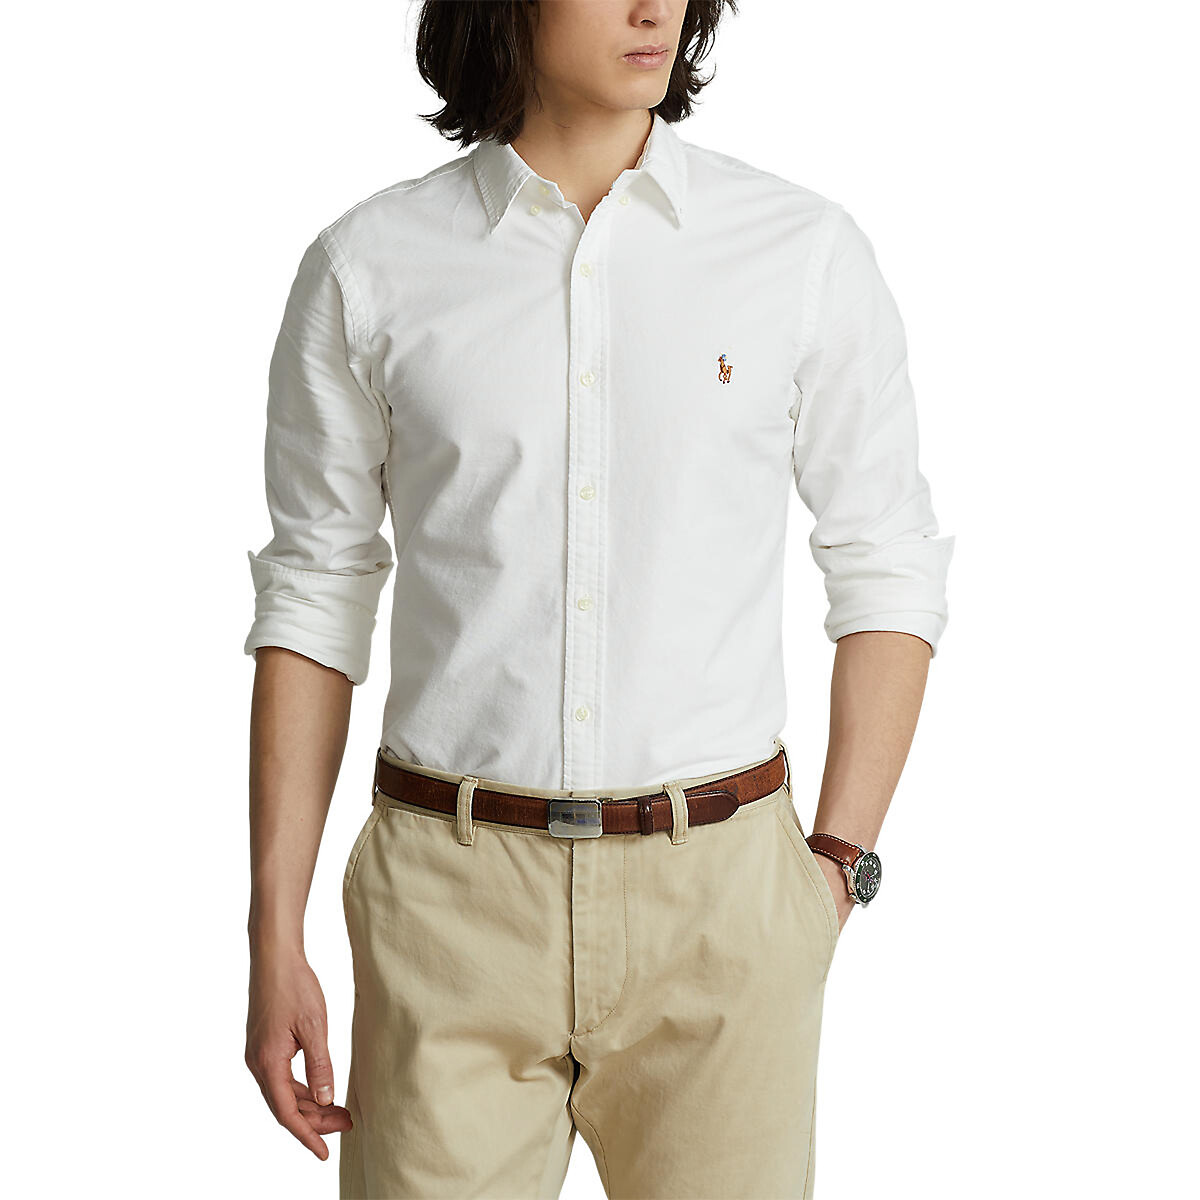 Рубашка узкого покроя из ткани оксфорд L белый рубашка зауженная из ткани оксфорд s черный